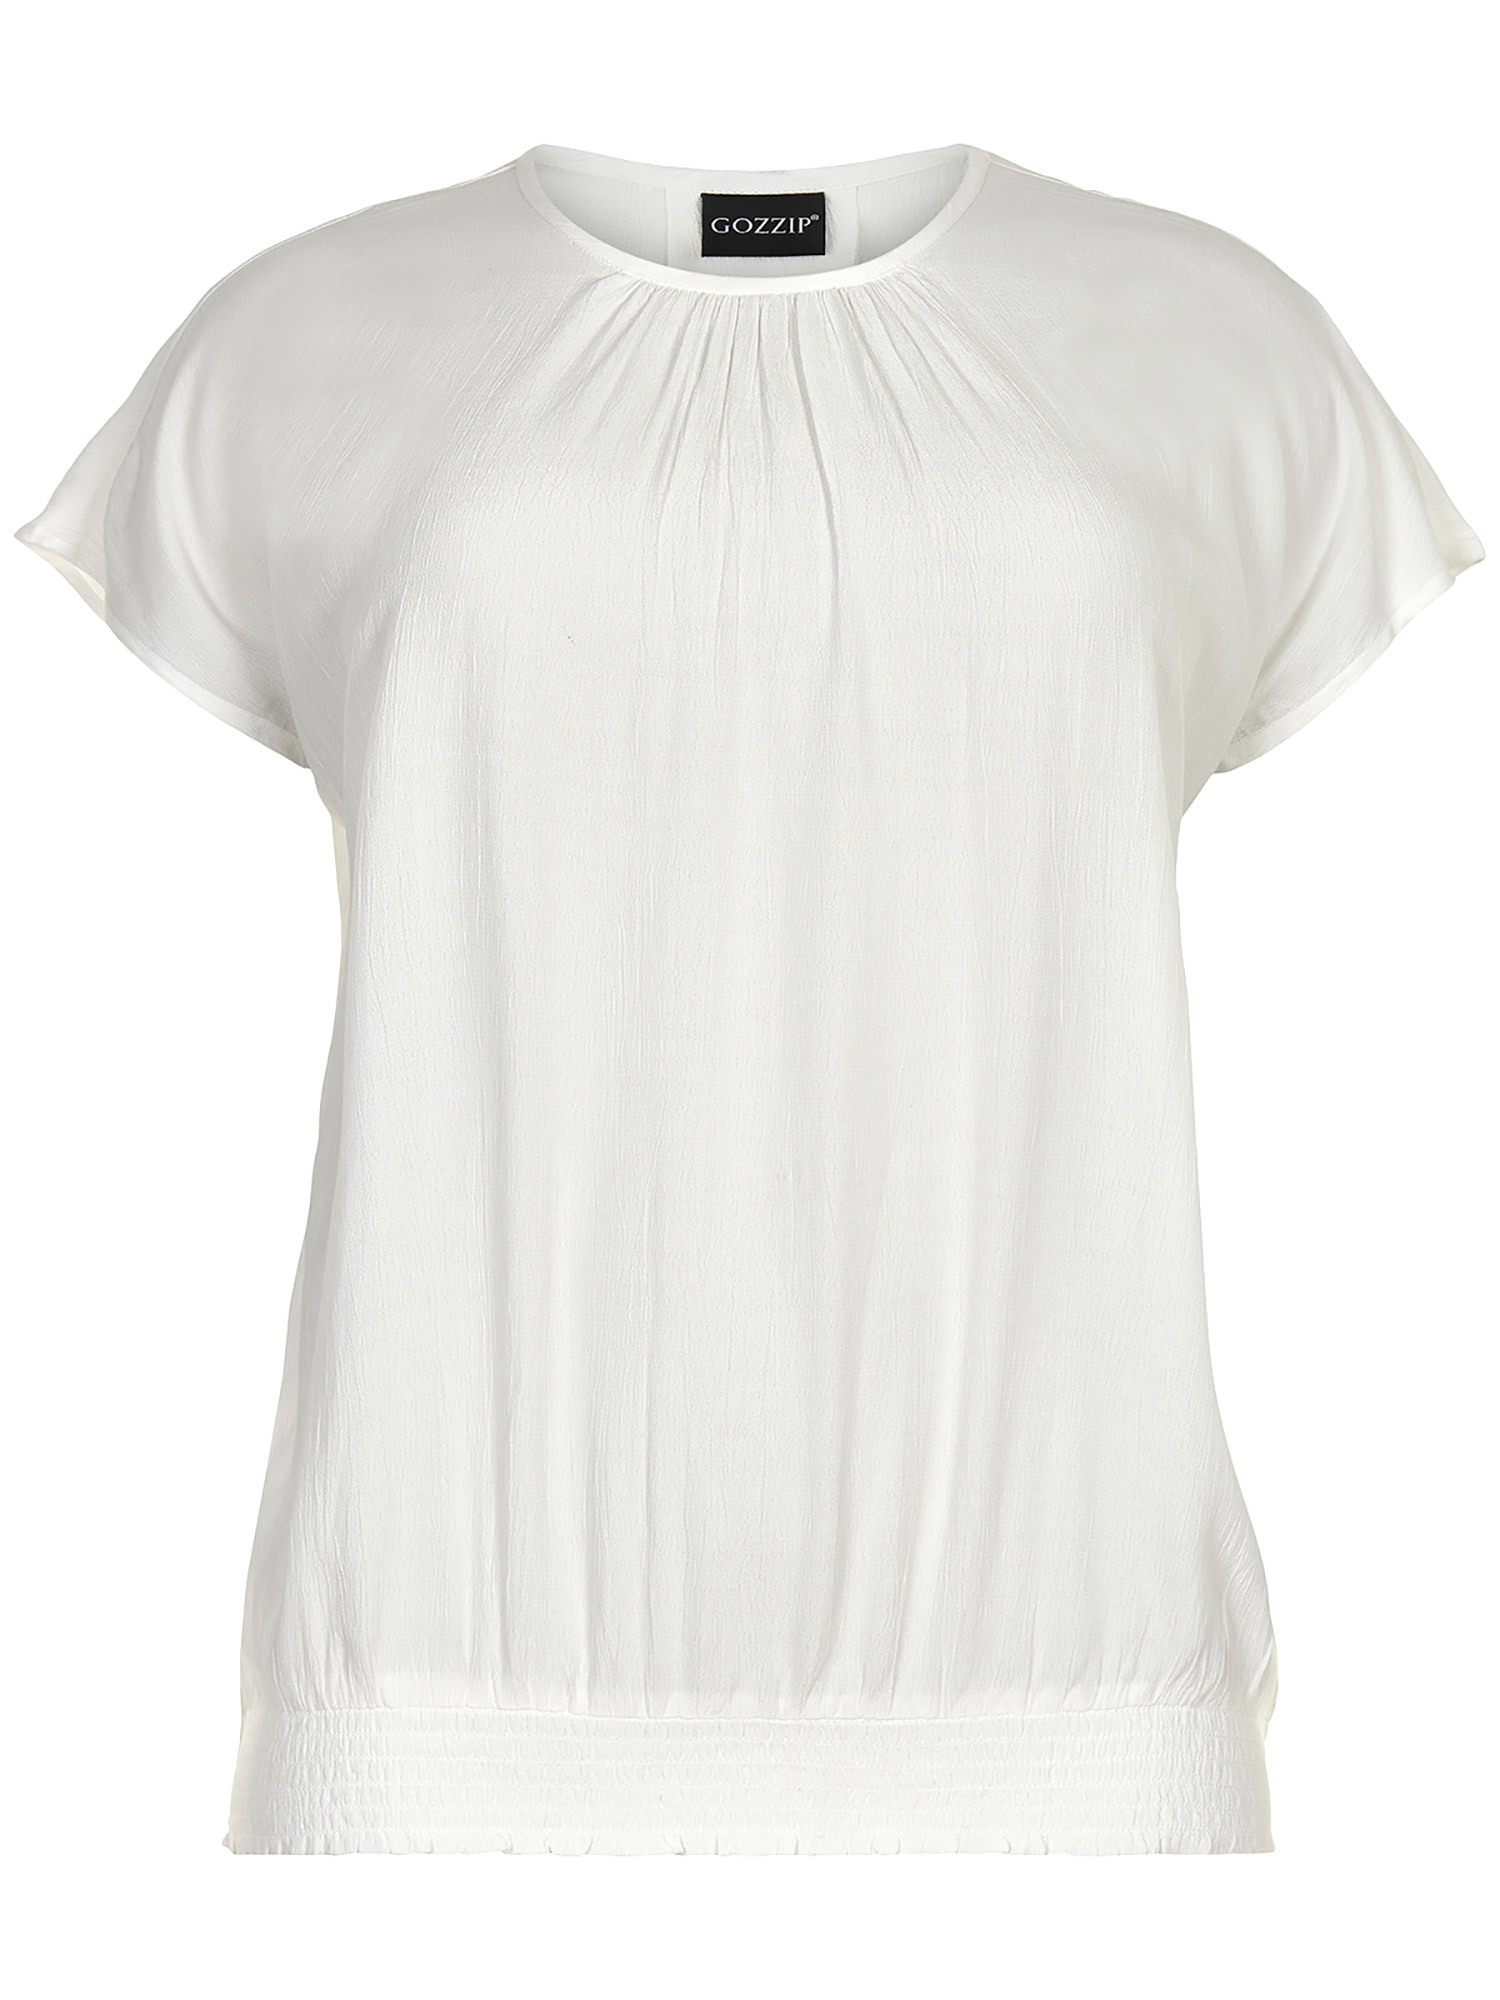 Elise - Smuk hvid viskose bluse med bred smock elastik kant fra Gozzip